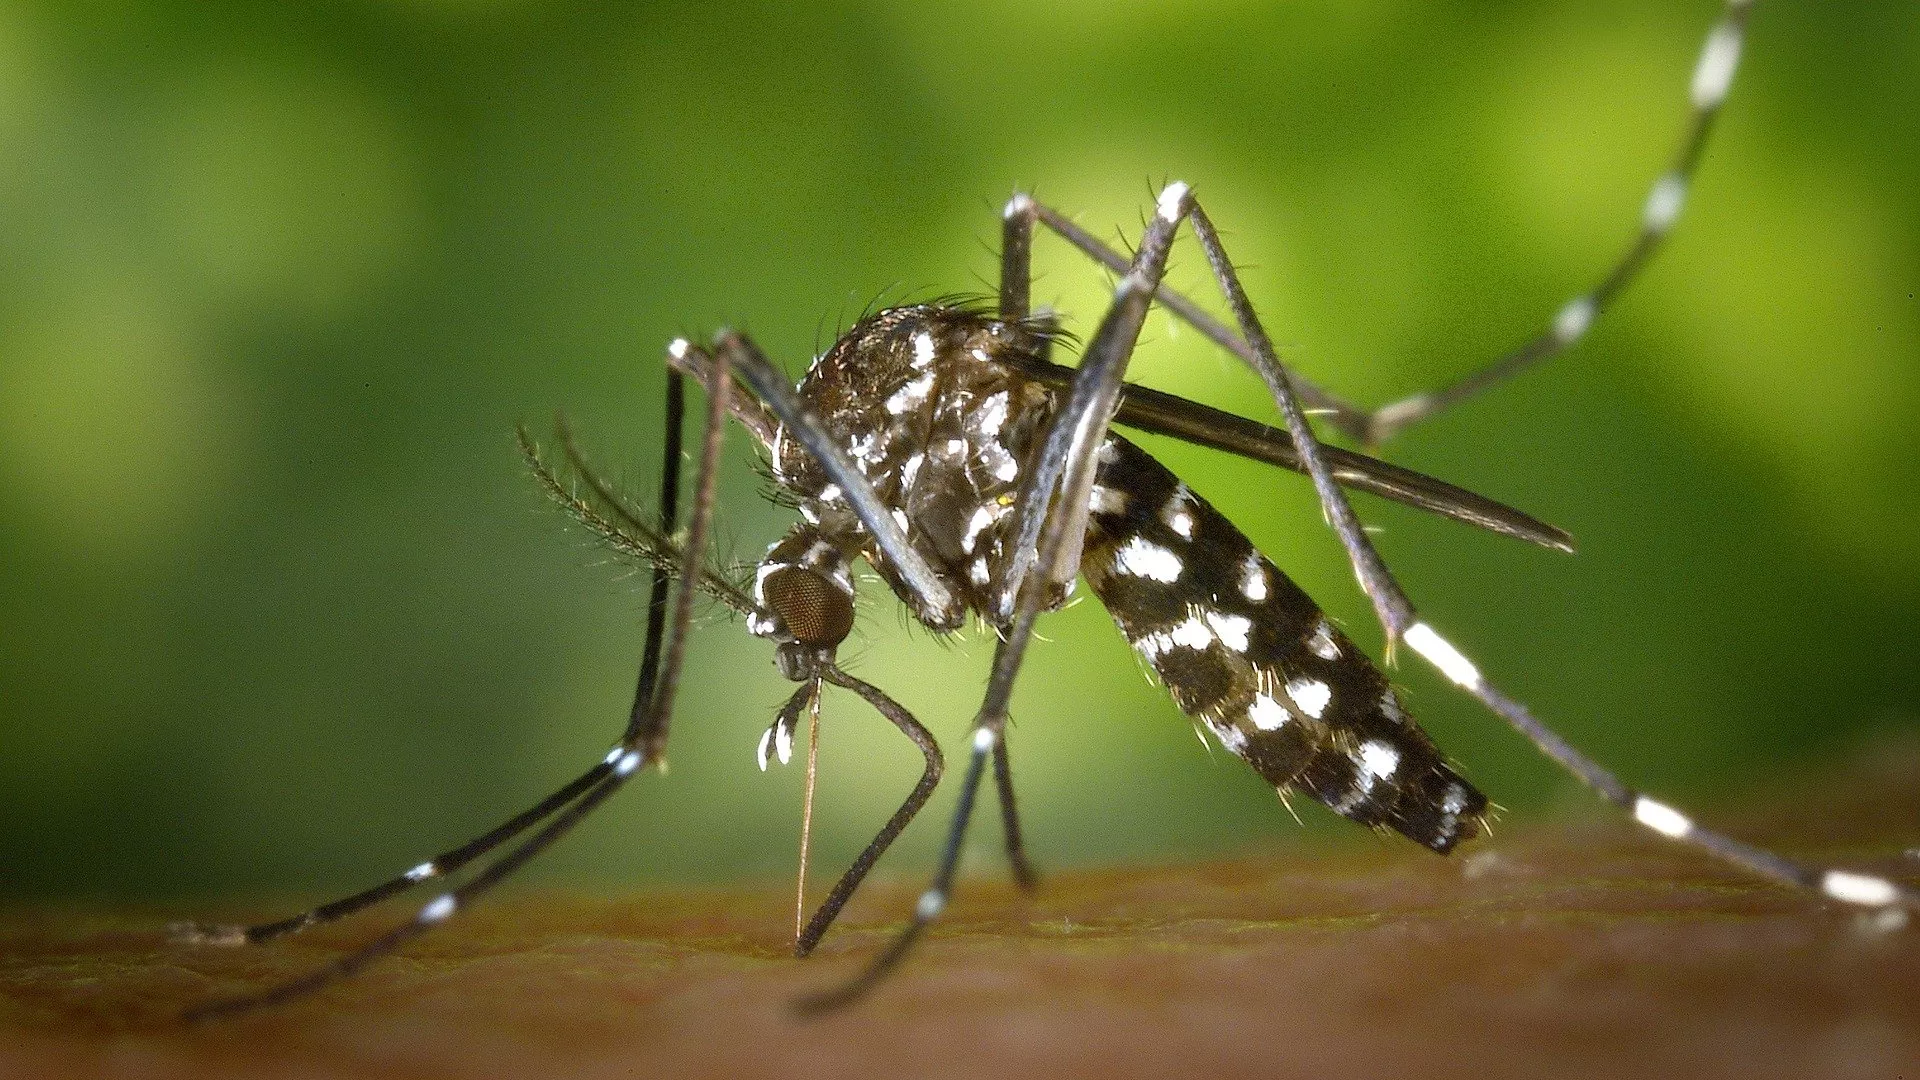  Médicos australianos descubren cómo destruir los parásitos que causan el paludismo